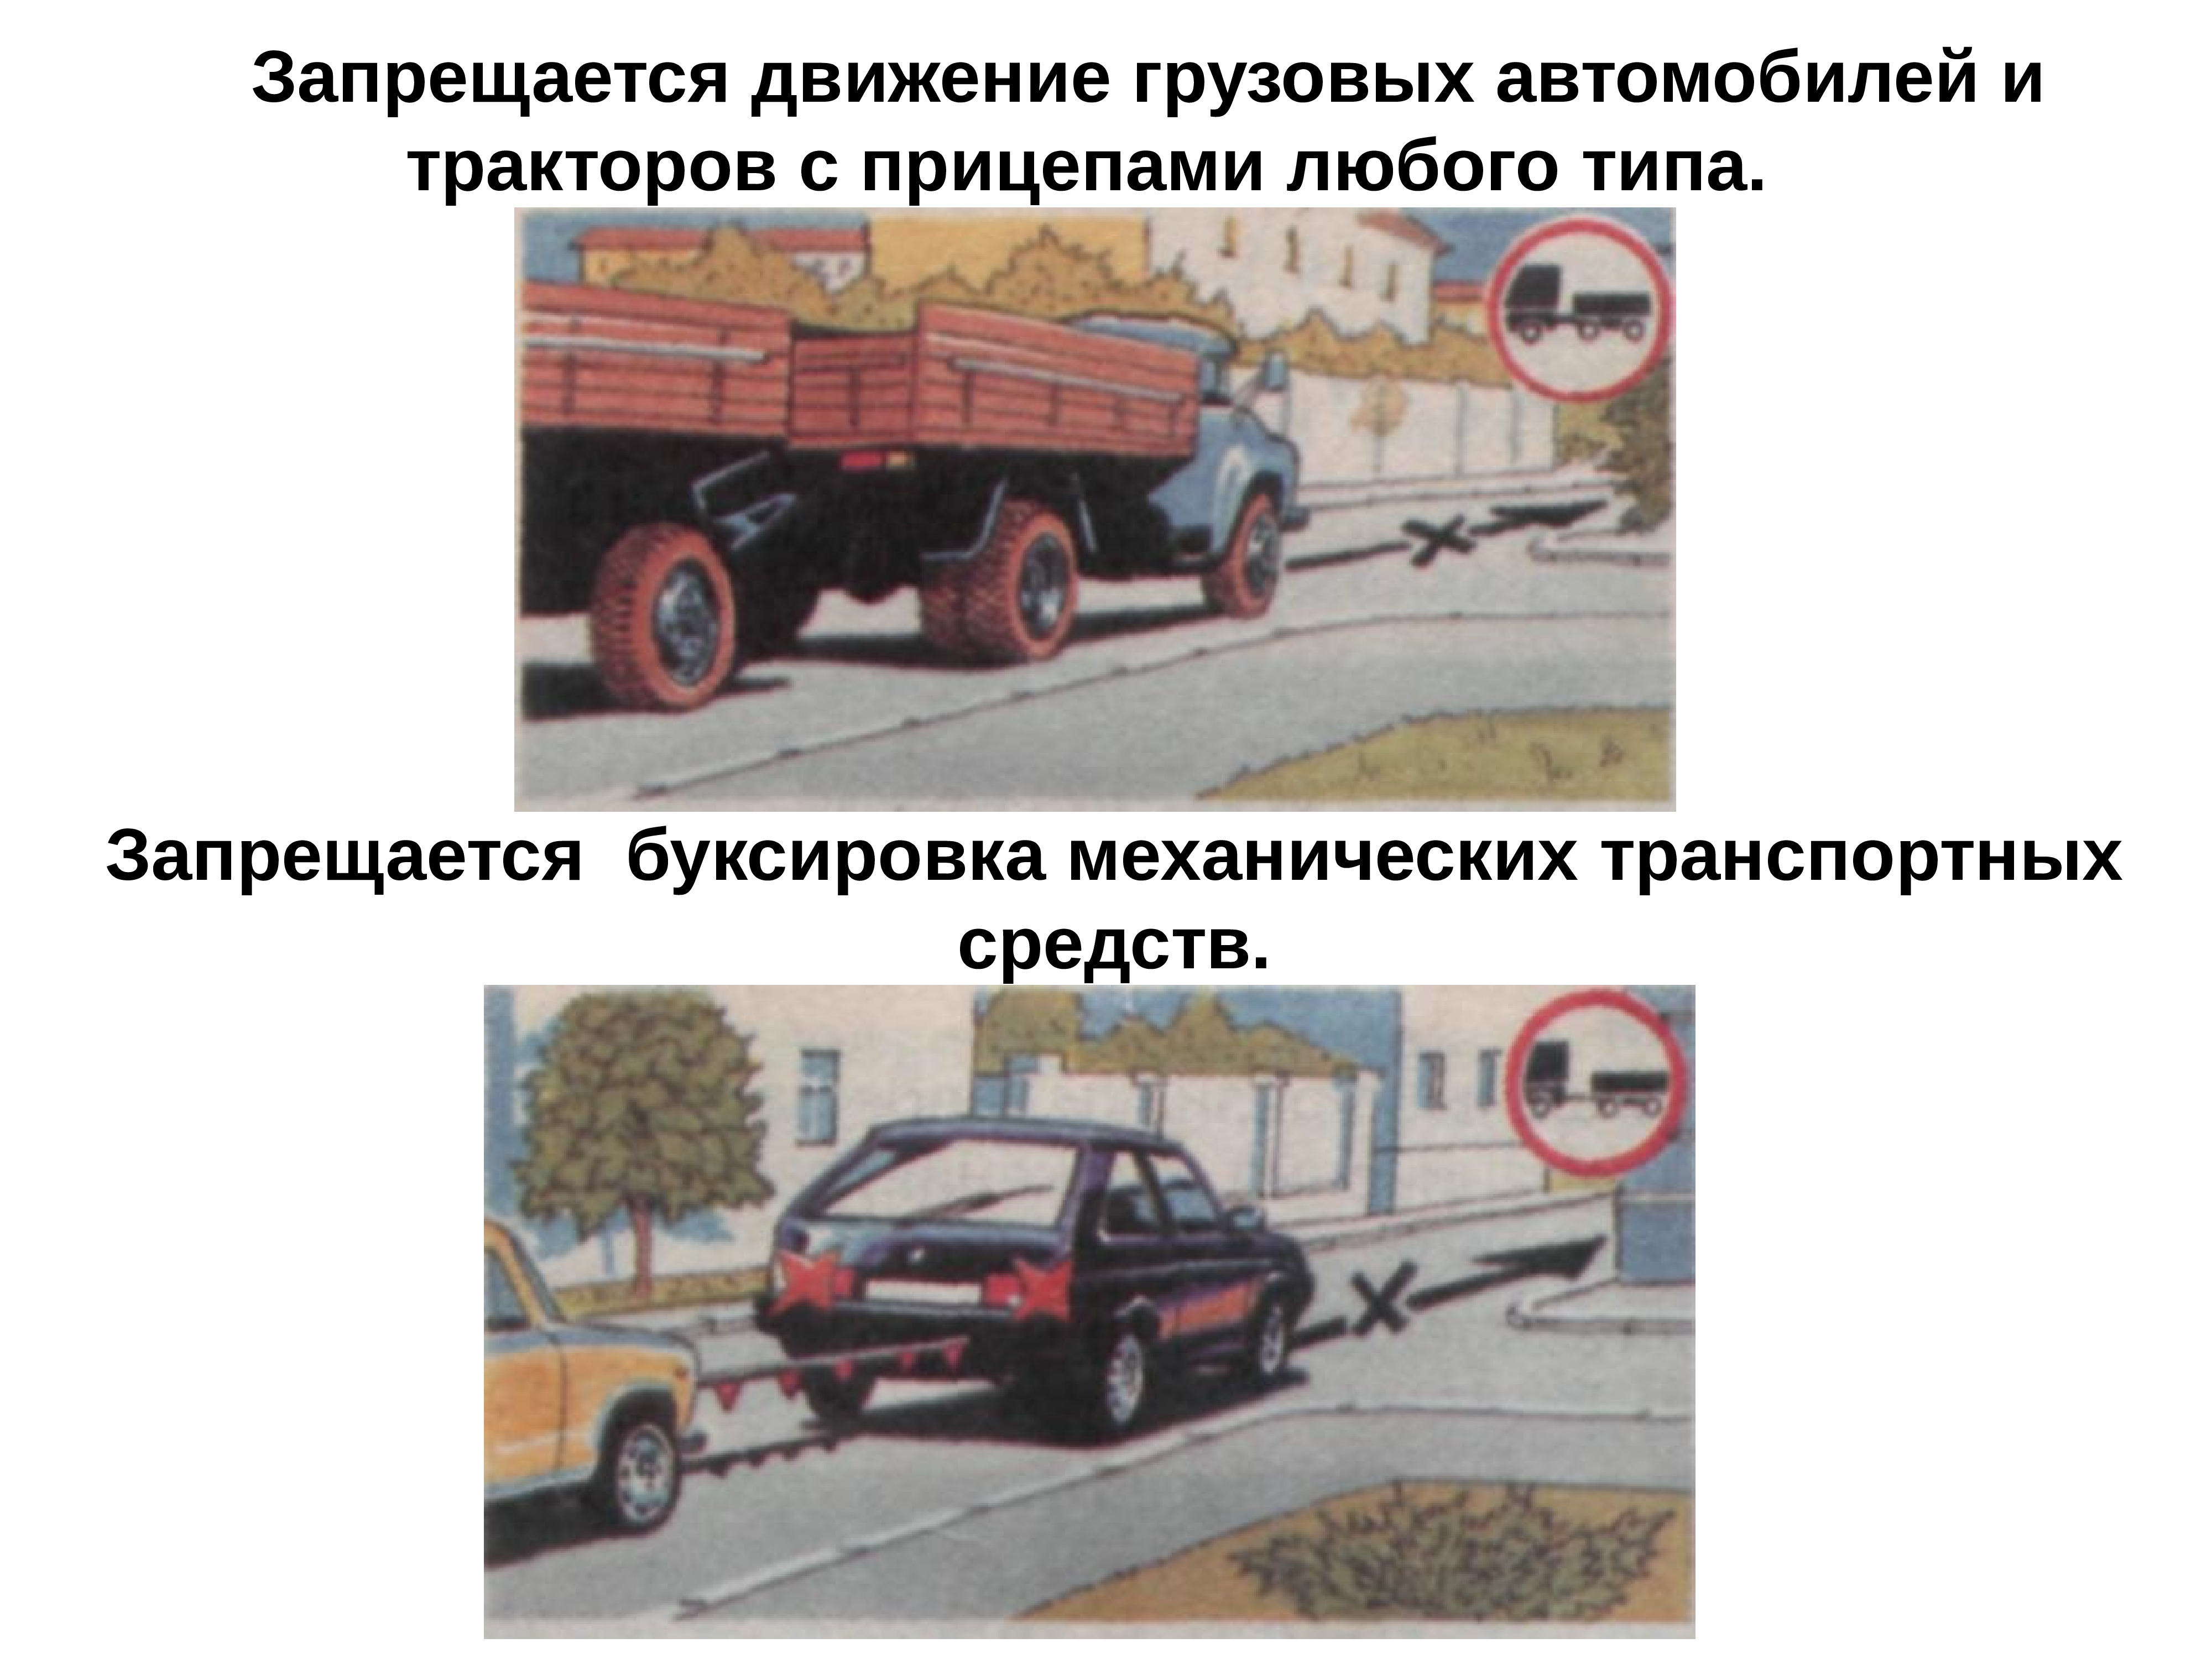 В каких случаях запрещается буксировка транспортных средств. Знак 3.7 движение с прицепом. 3.7 «Движение с прицепом запрещено. Буксировка транспортных средств. Запрещается движение грузовых автомобилей и тракторов.